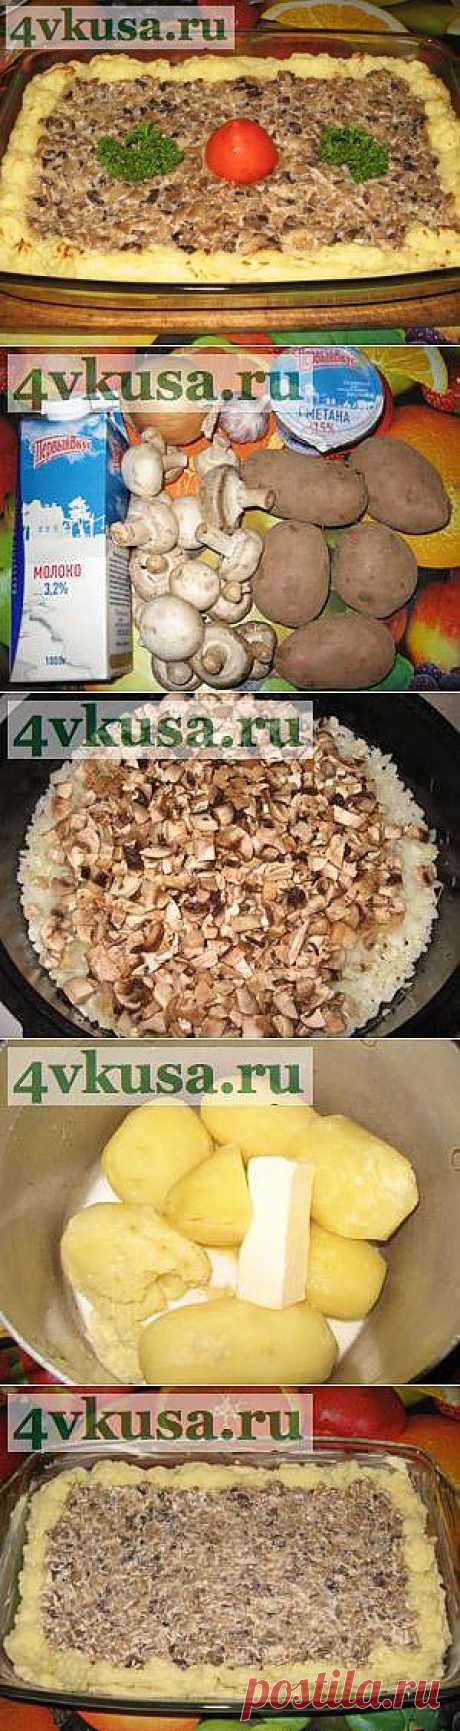 Запеканка с грибами и картофельным пюре | 4vkusa.ru